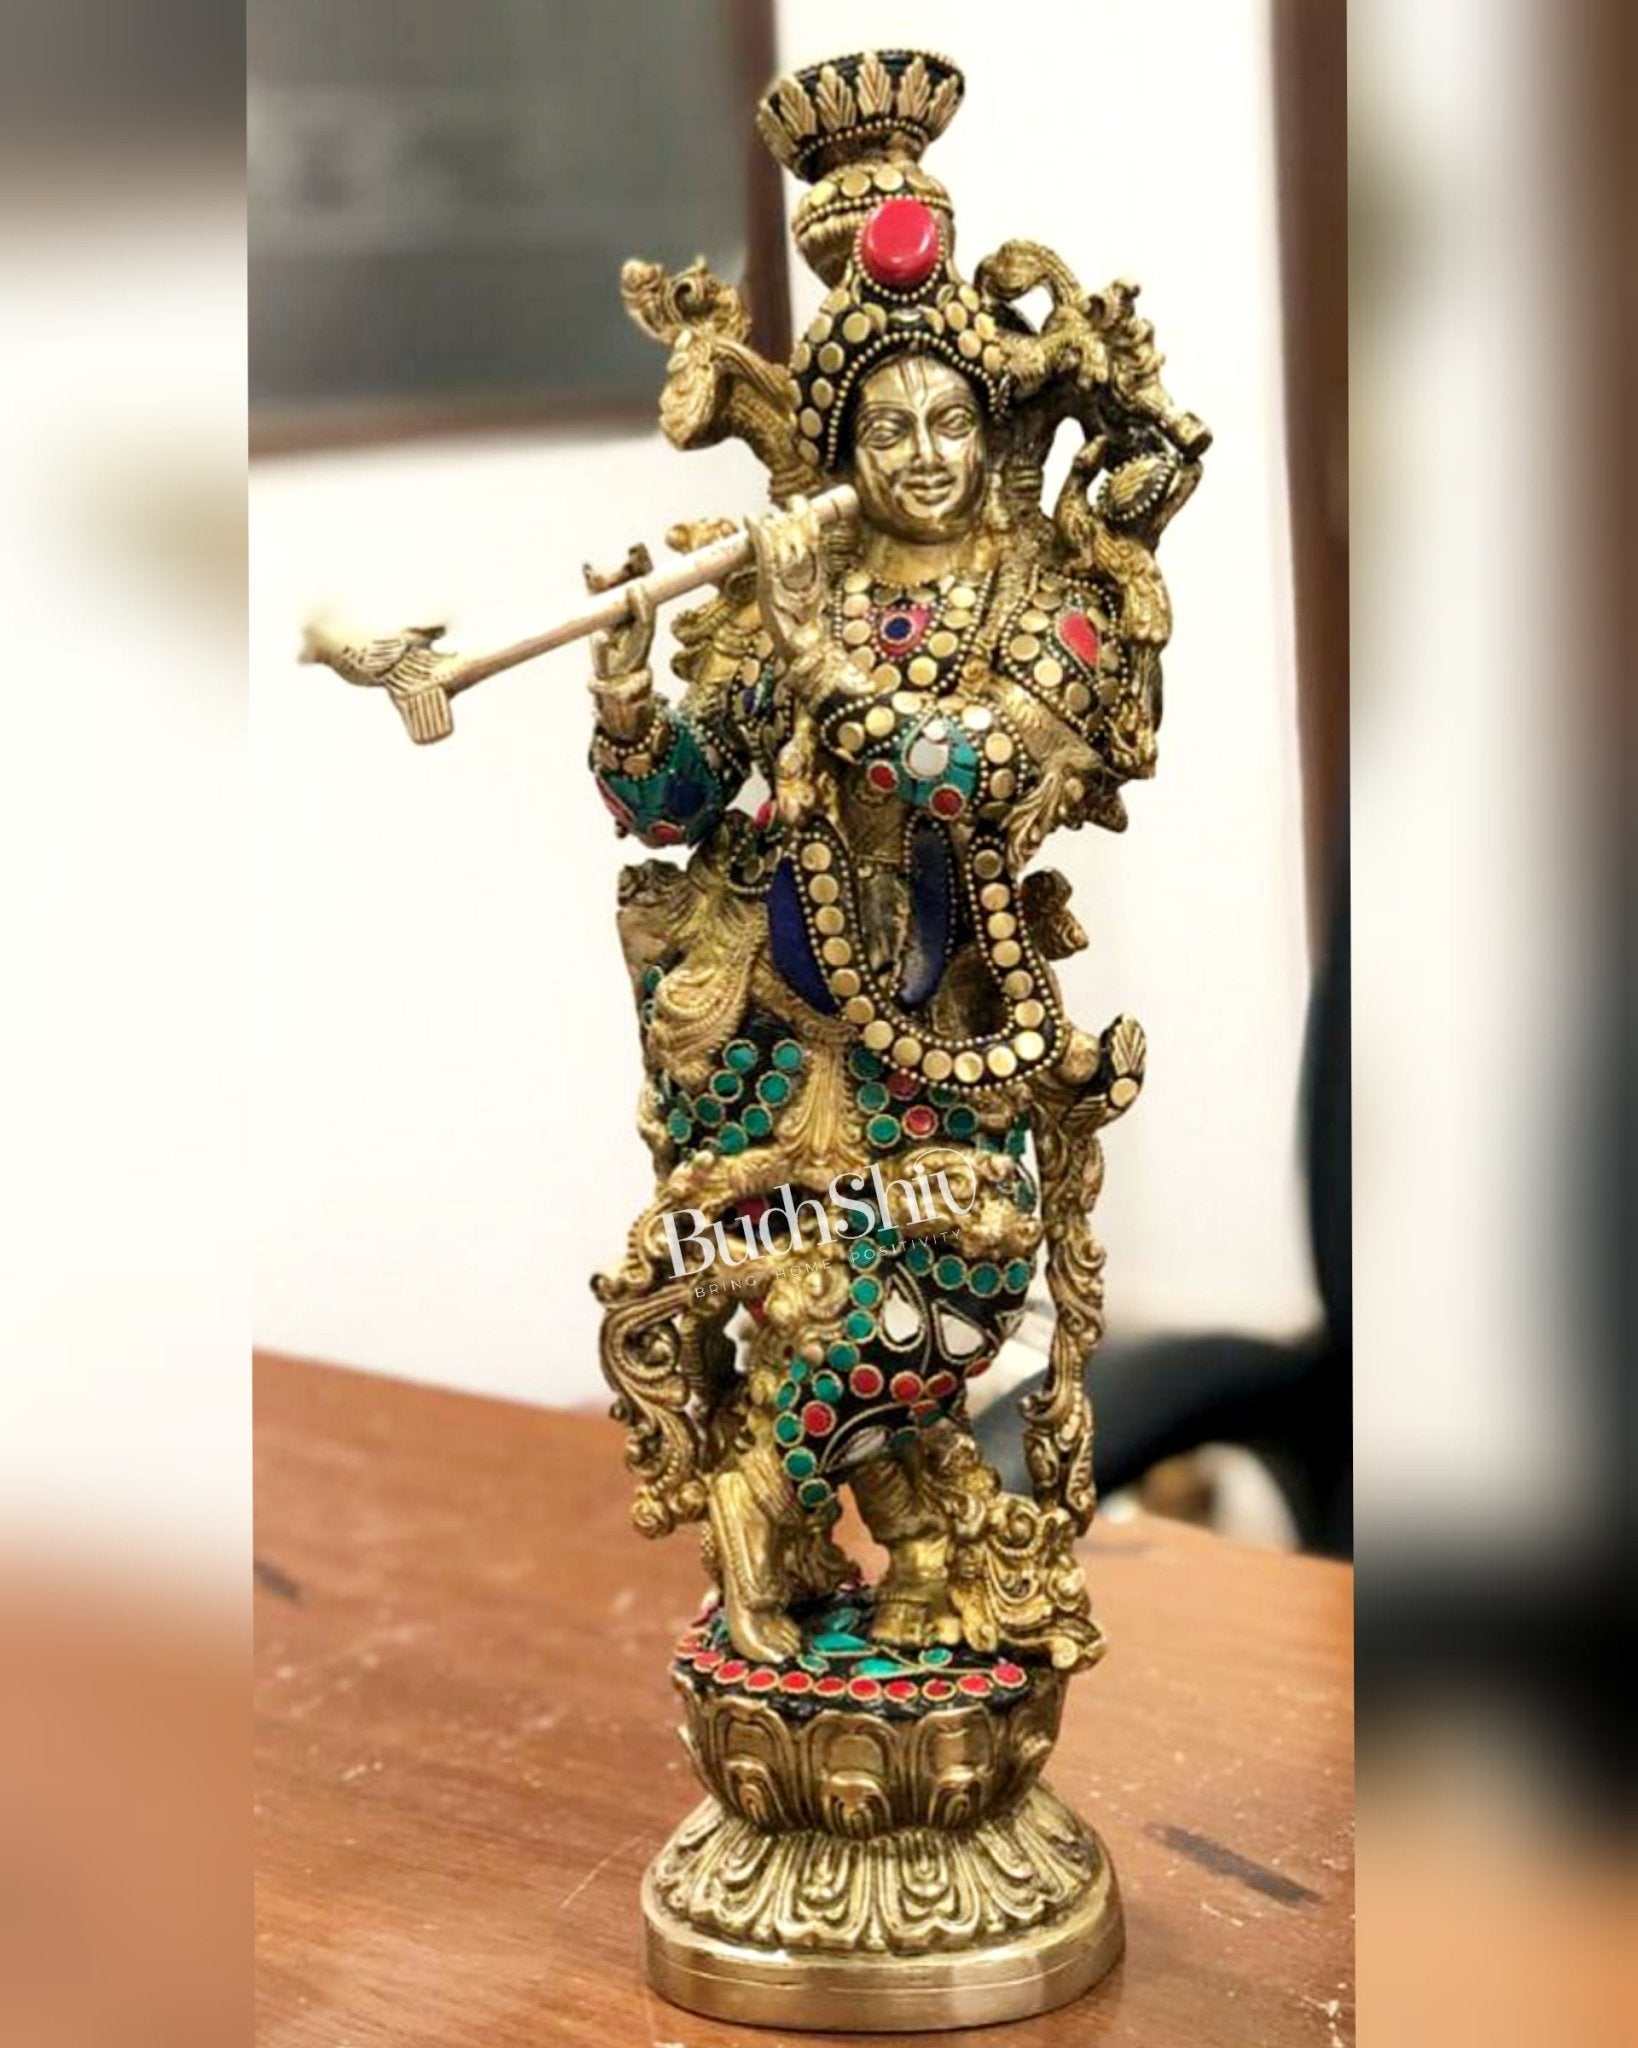 Fully Decorated Brass Krishna Statue | Meenakari Stonework with Natural Stones | 14" Height - Budhshiv.com